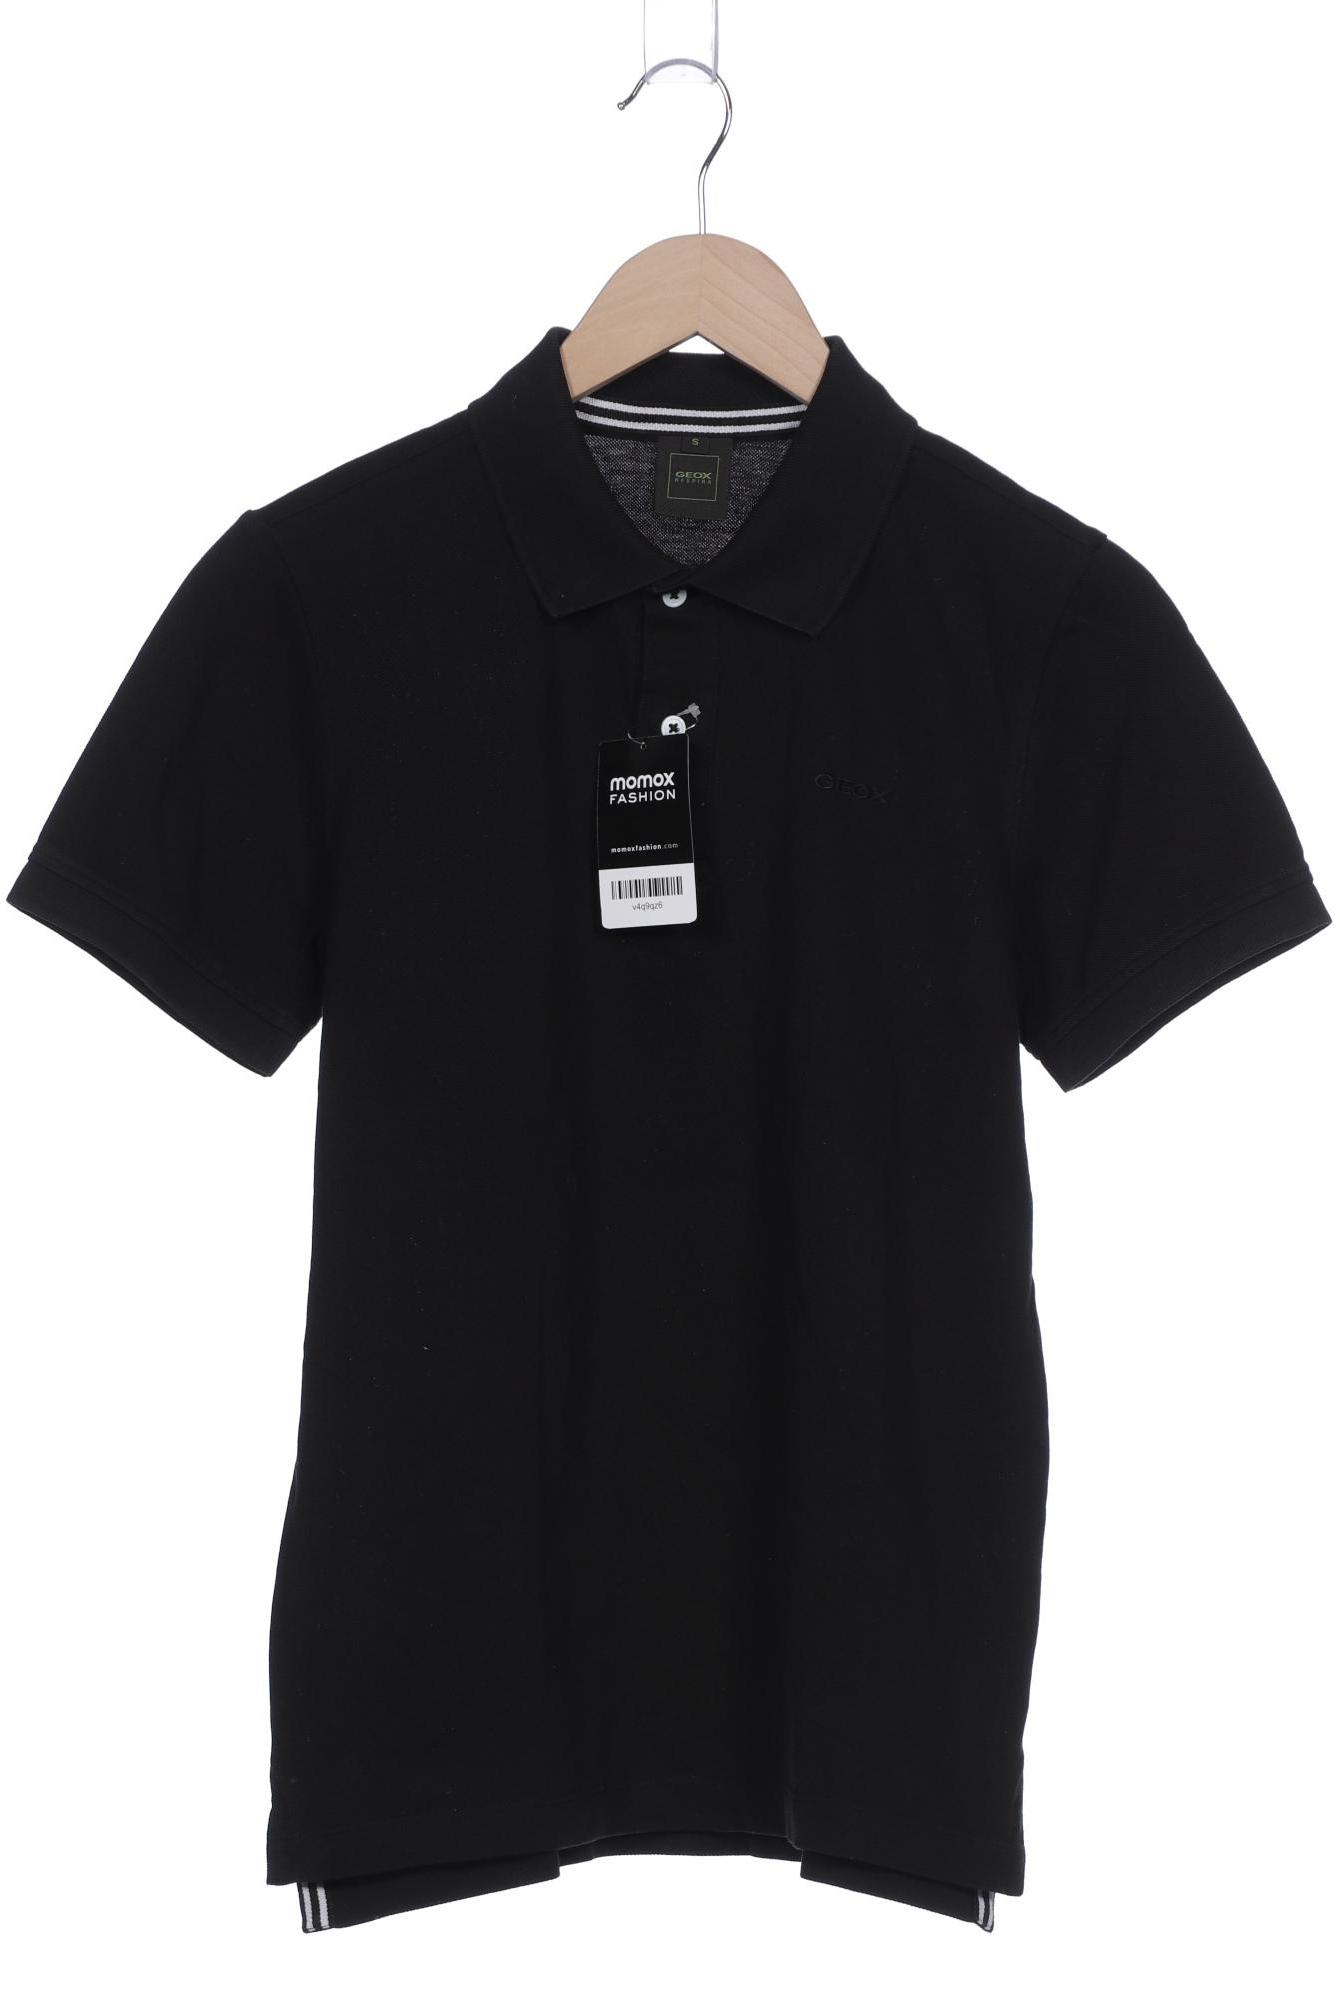 Geox Herren Poloshirt, schwarz, Gr. 46 von Geox